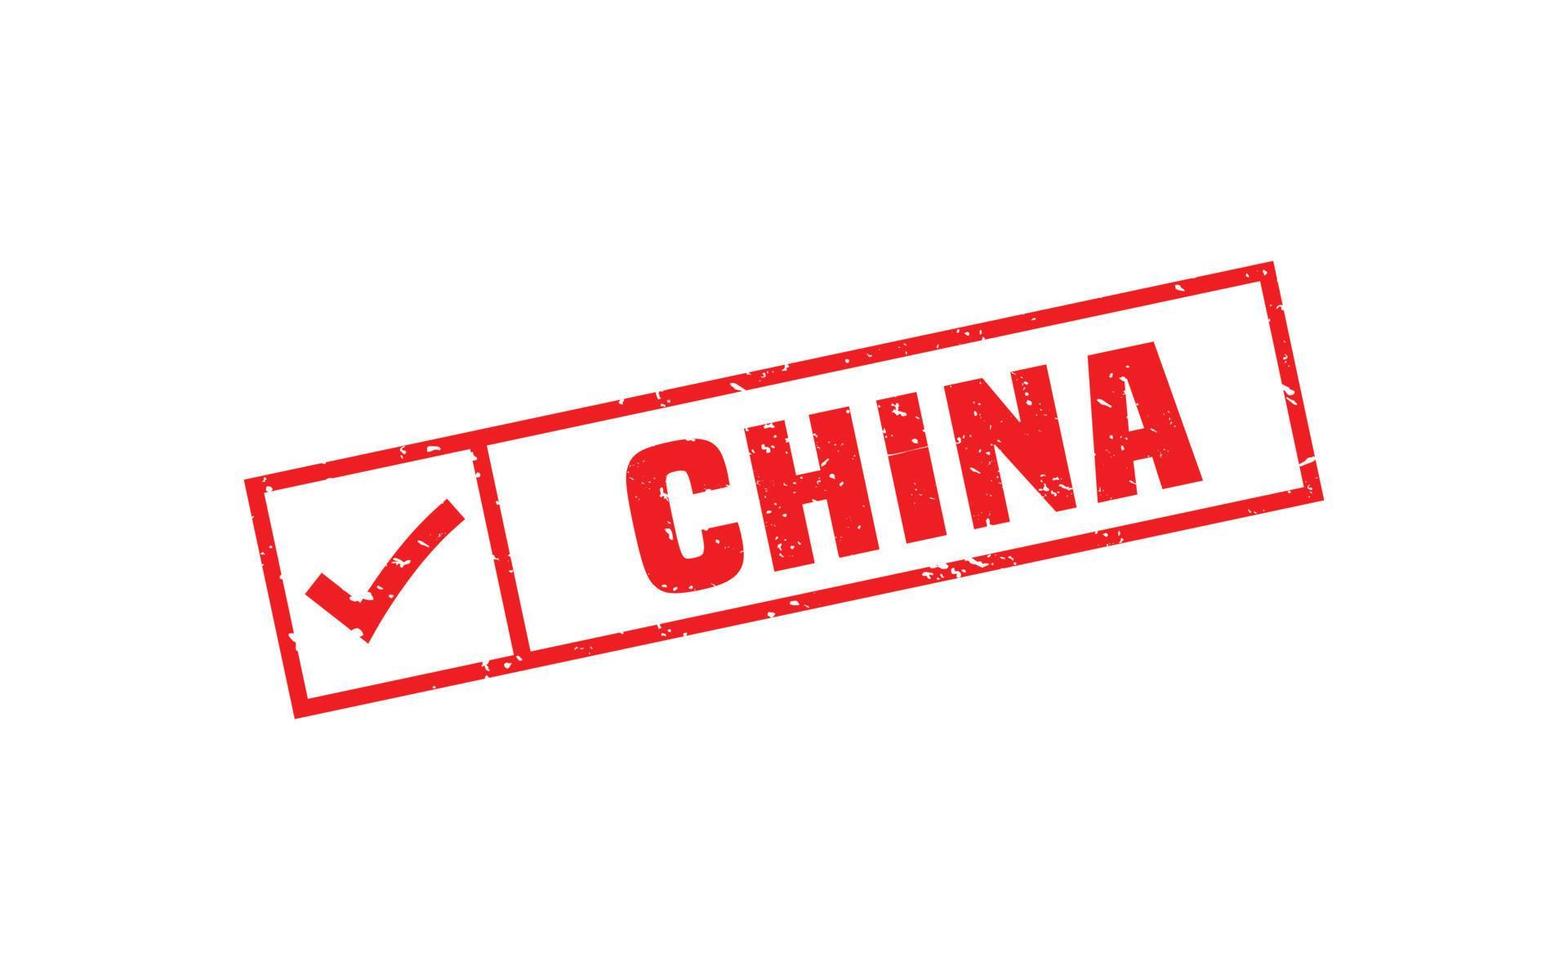 China-Stempelgummi mit Grunge-Stil auf weißem Hintergrund vektor